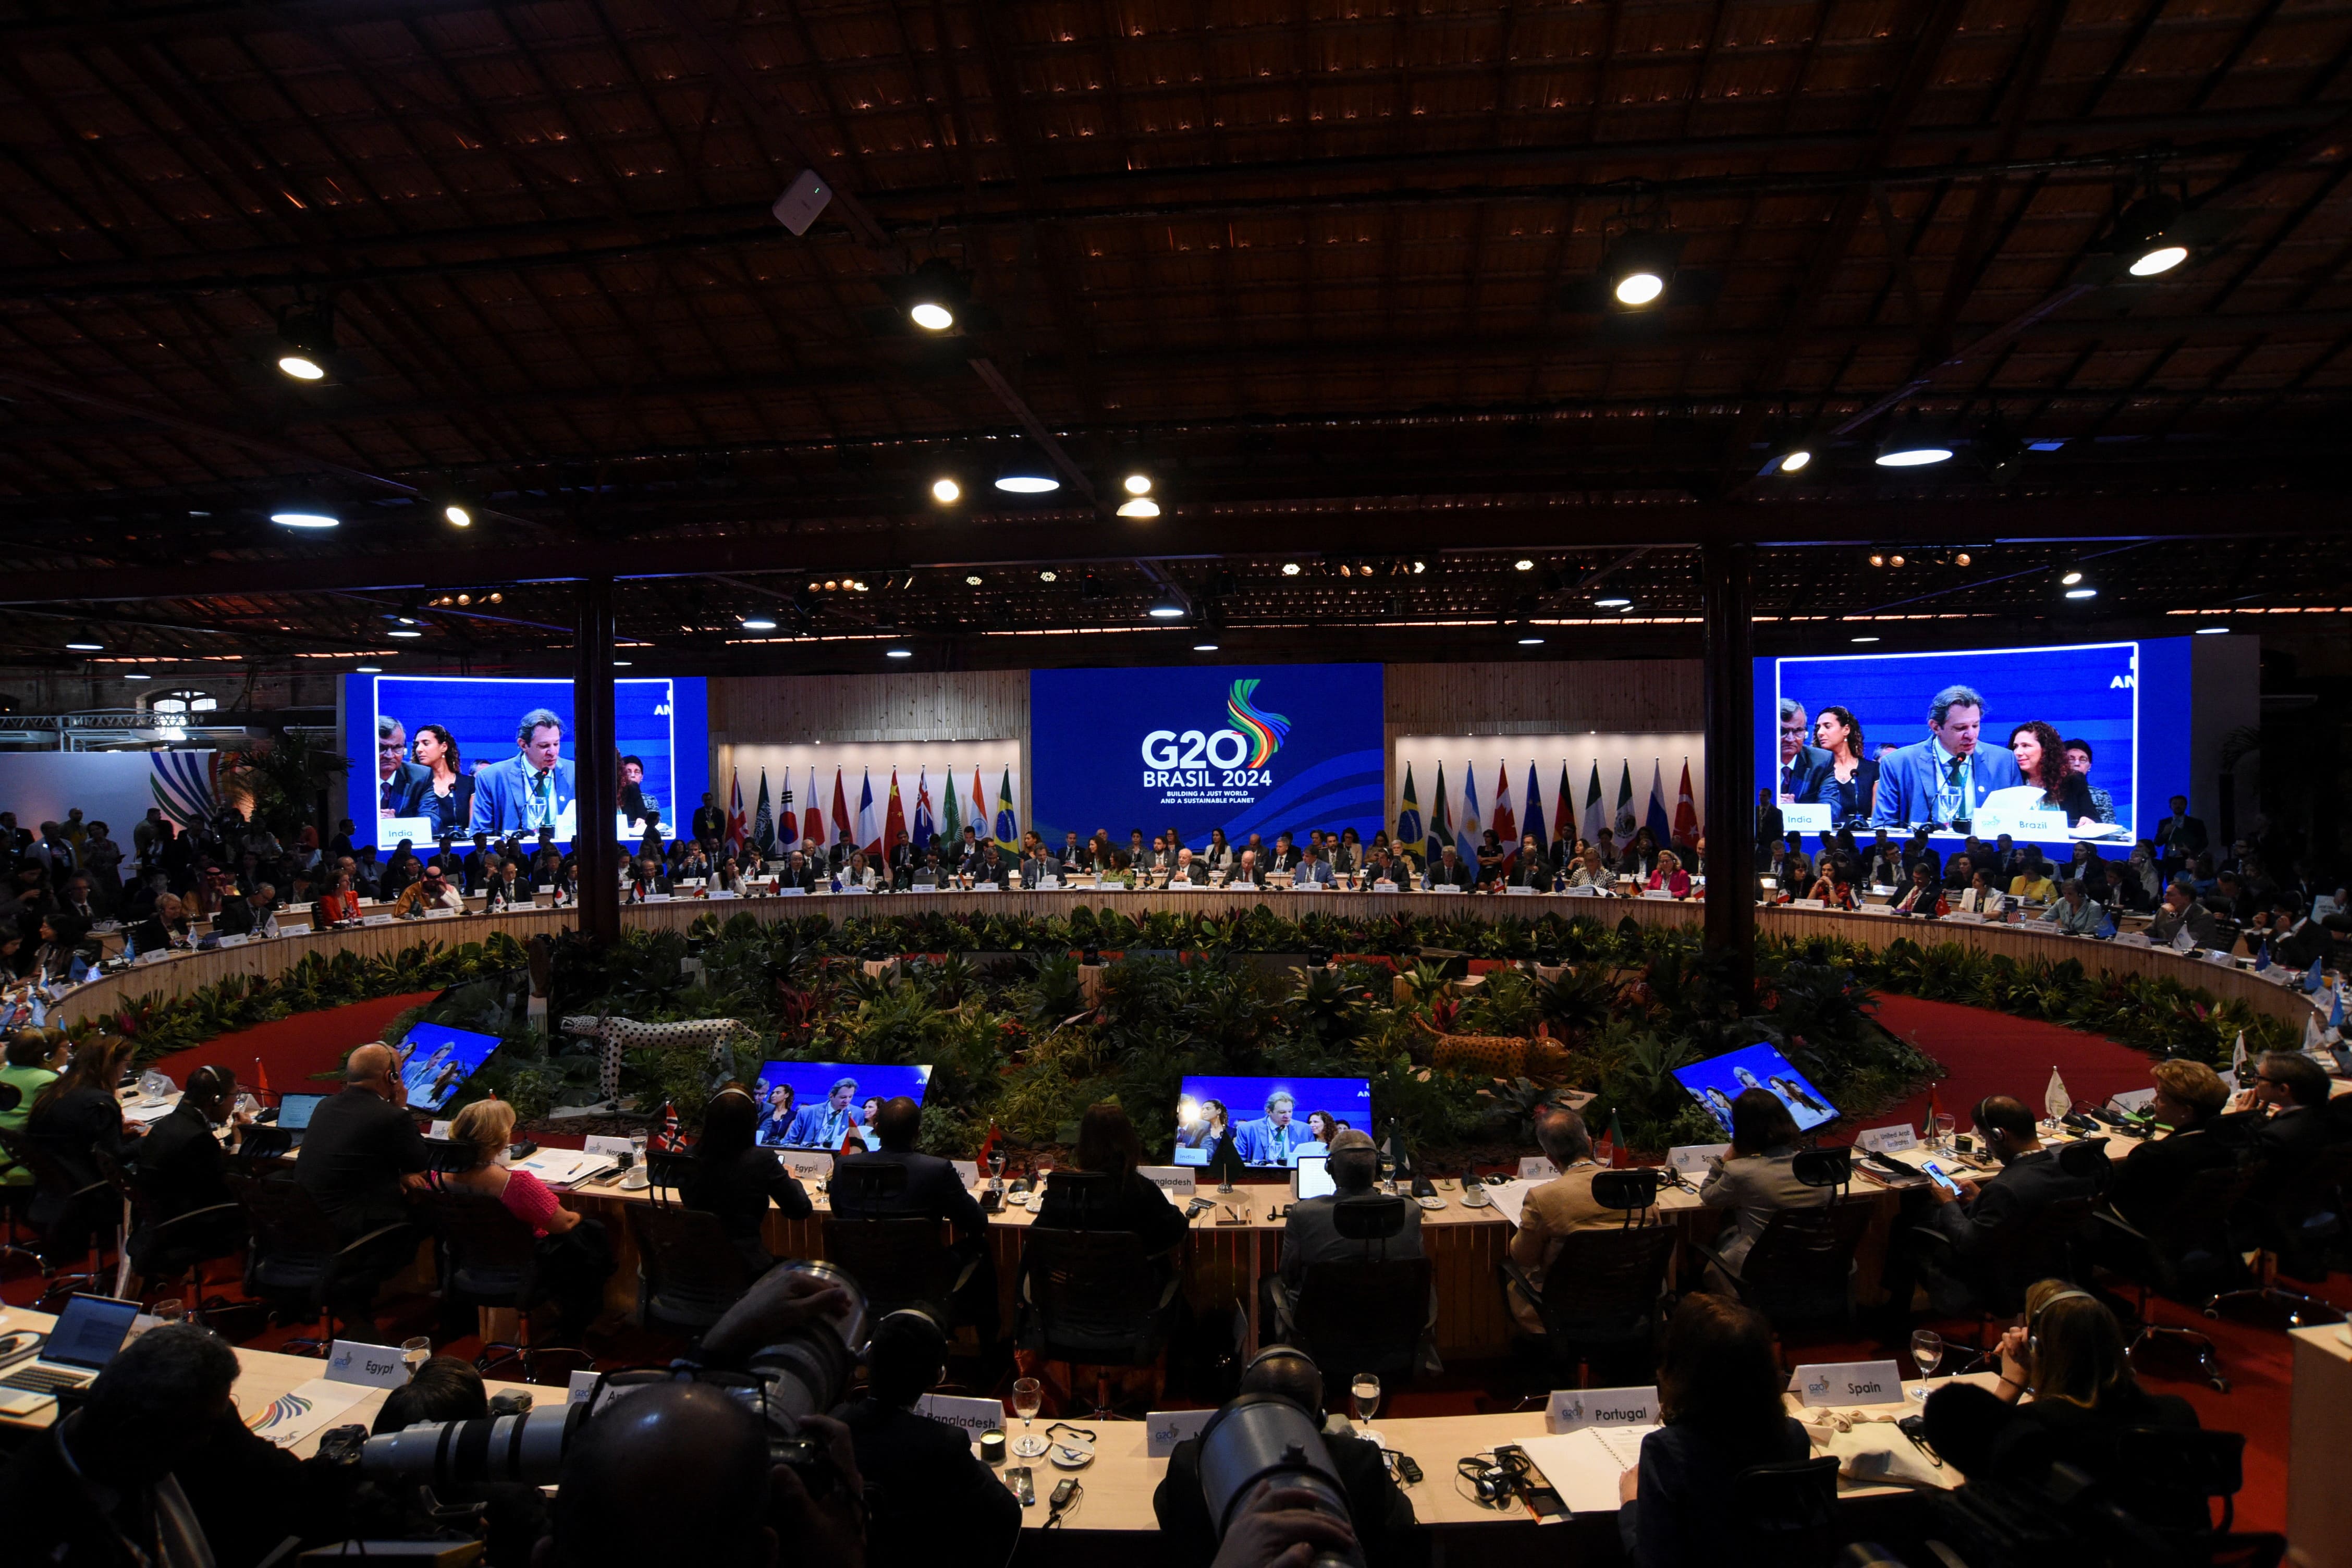 Le G20 d'accord pour « coopérer » sur la taxation des super-riches, mais pas avec un impôt mondial